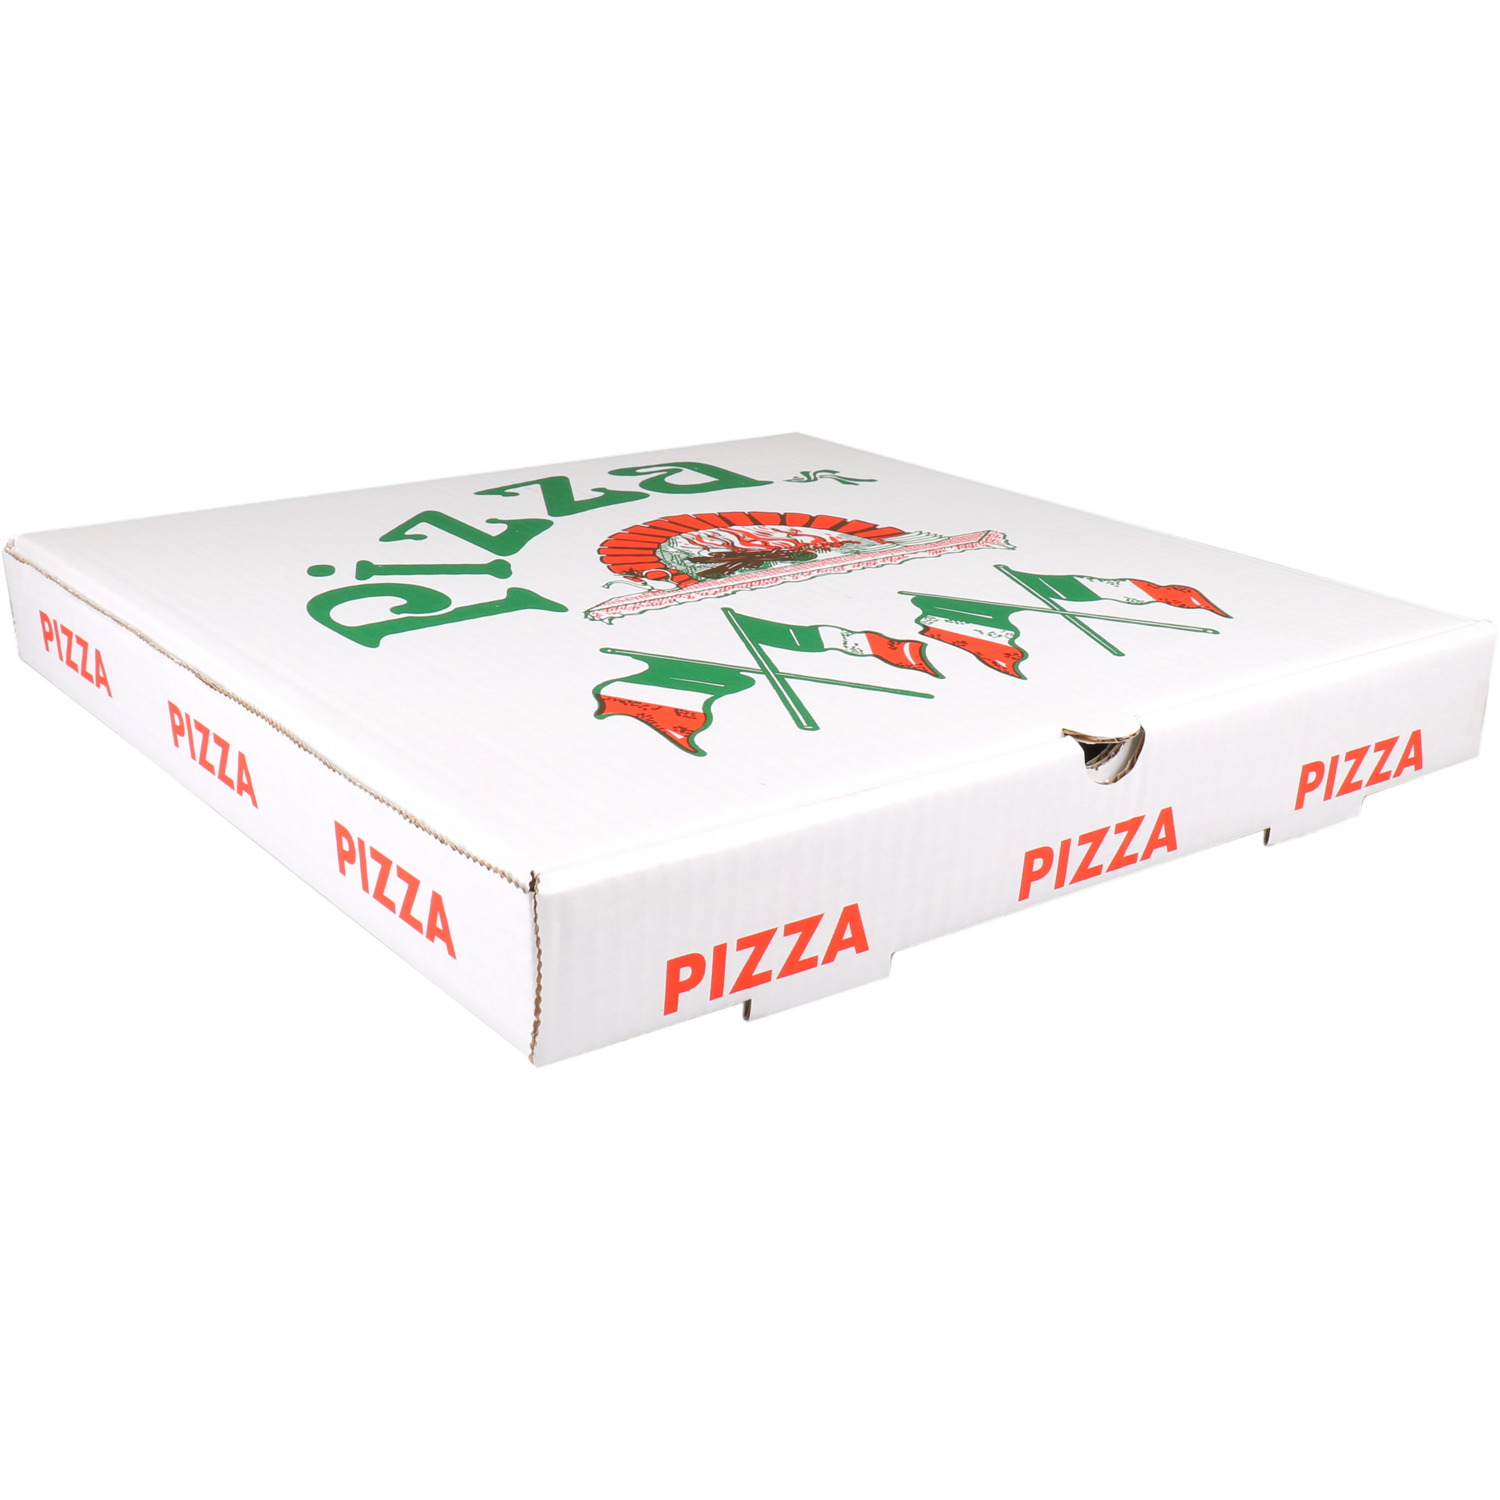  Pizzaschachtel, wellpappe, 36x36x4.5cm, americano, weiß 1